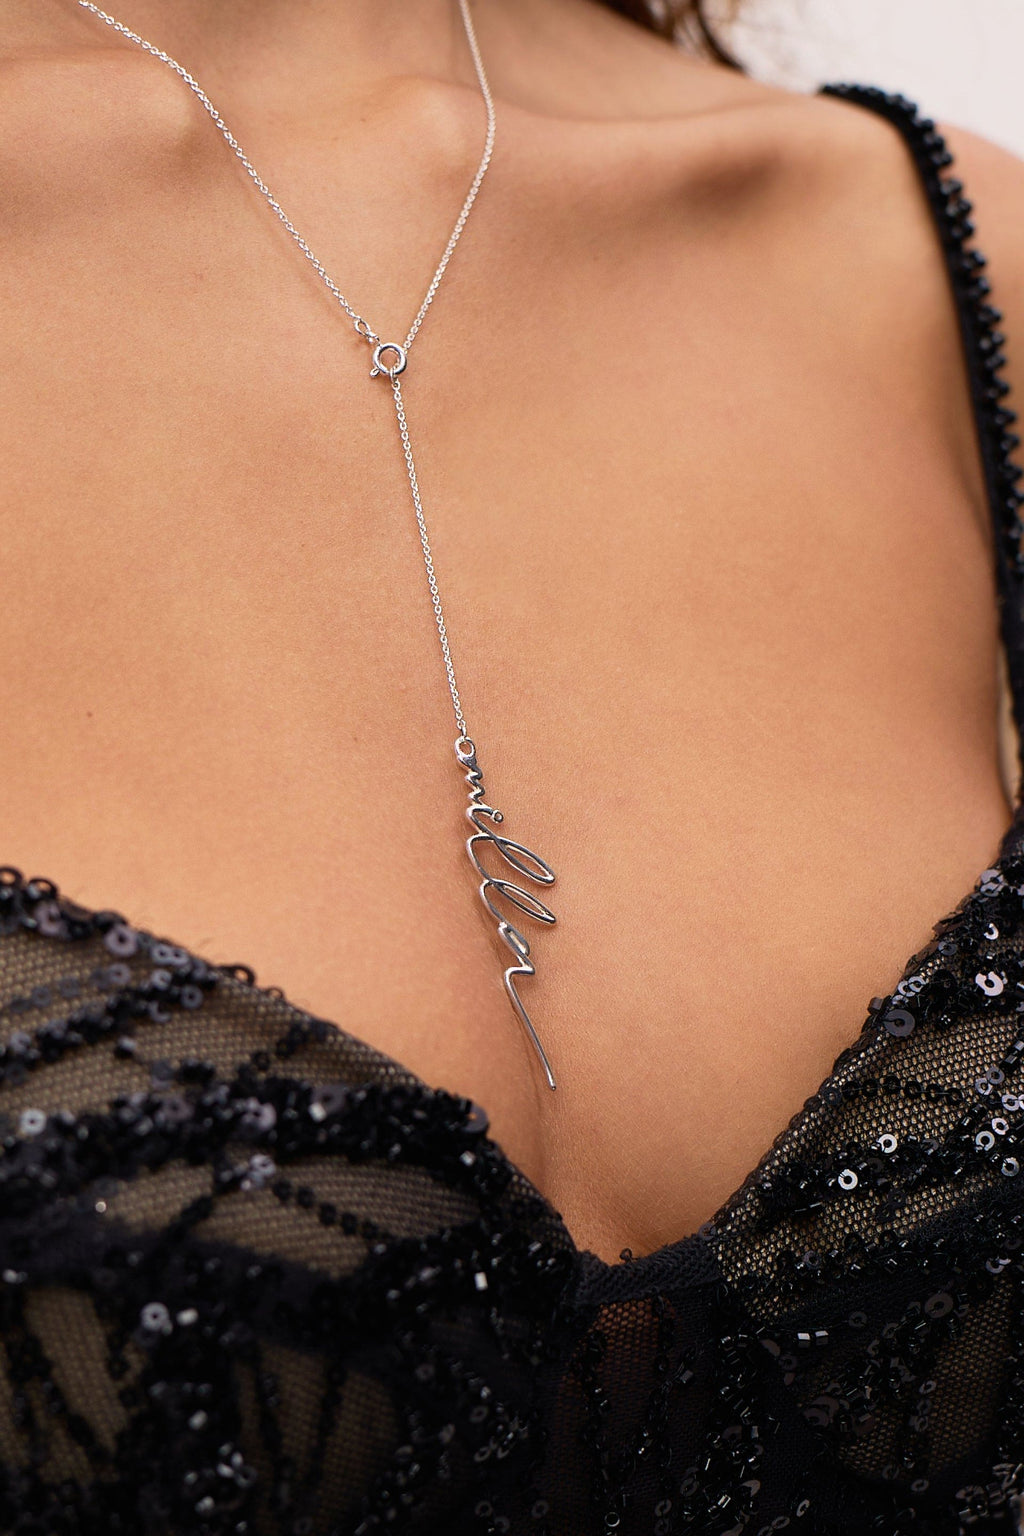 Lariat necklace with Milla's signature